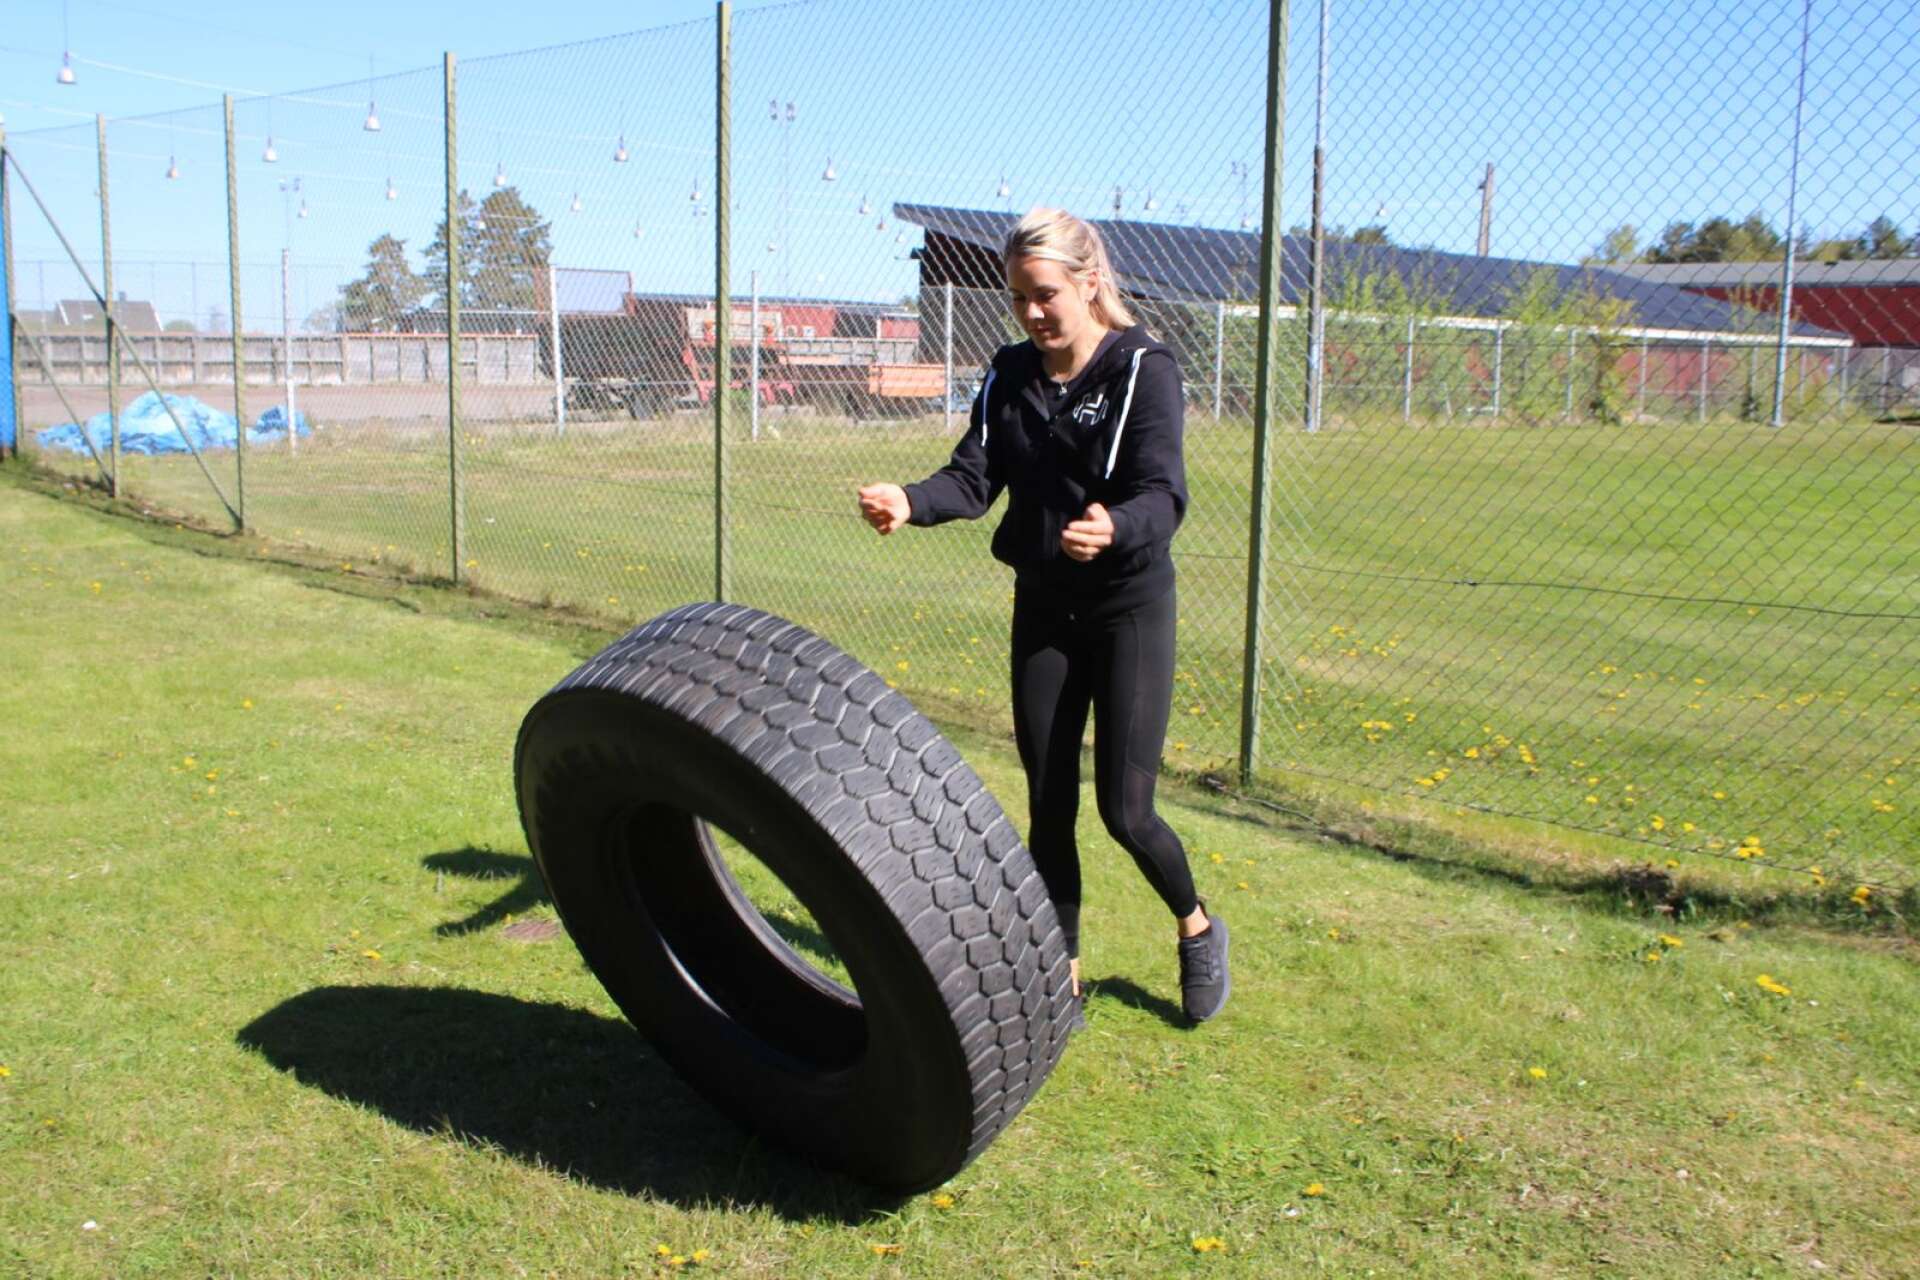 När man välter däck tränar man i stort sett hela kroppen, och man känner sig riktigt stark. Lina visar med ett rejält traktordäck. 